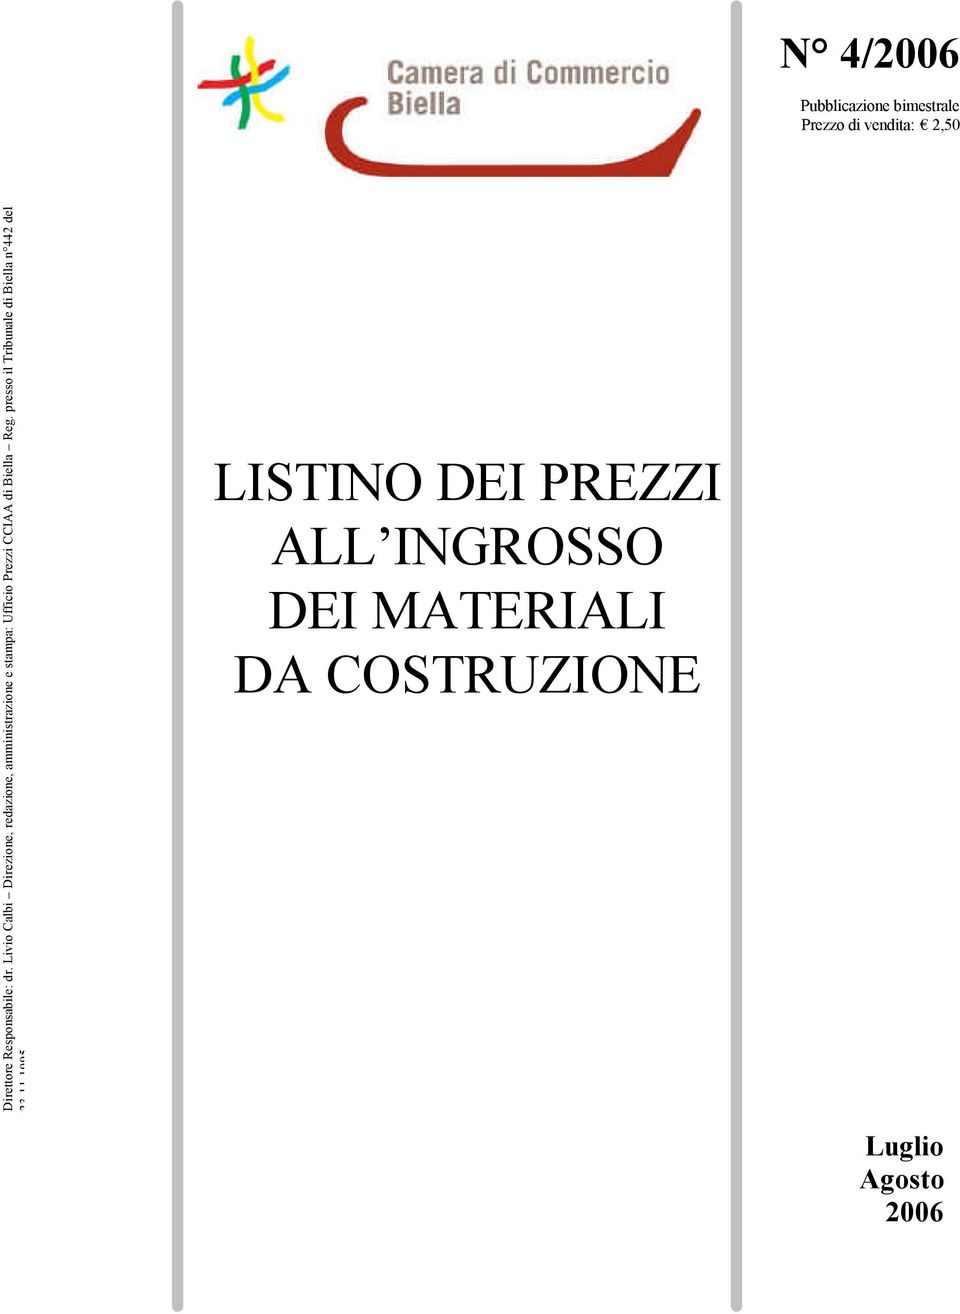 Livio Calbi Direzione, redazione, amministrazione e stampa: Ufficio Prezzi